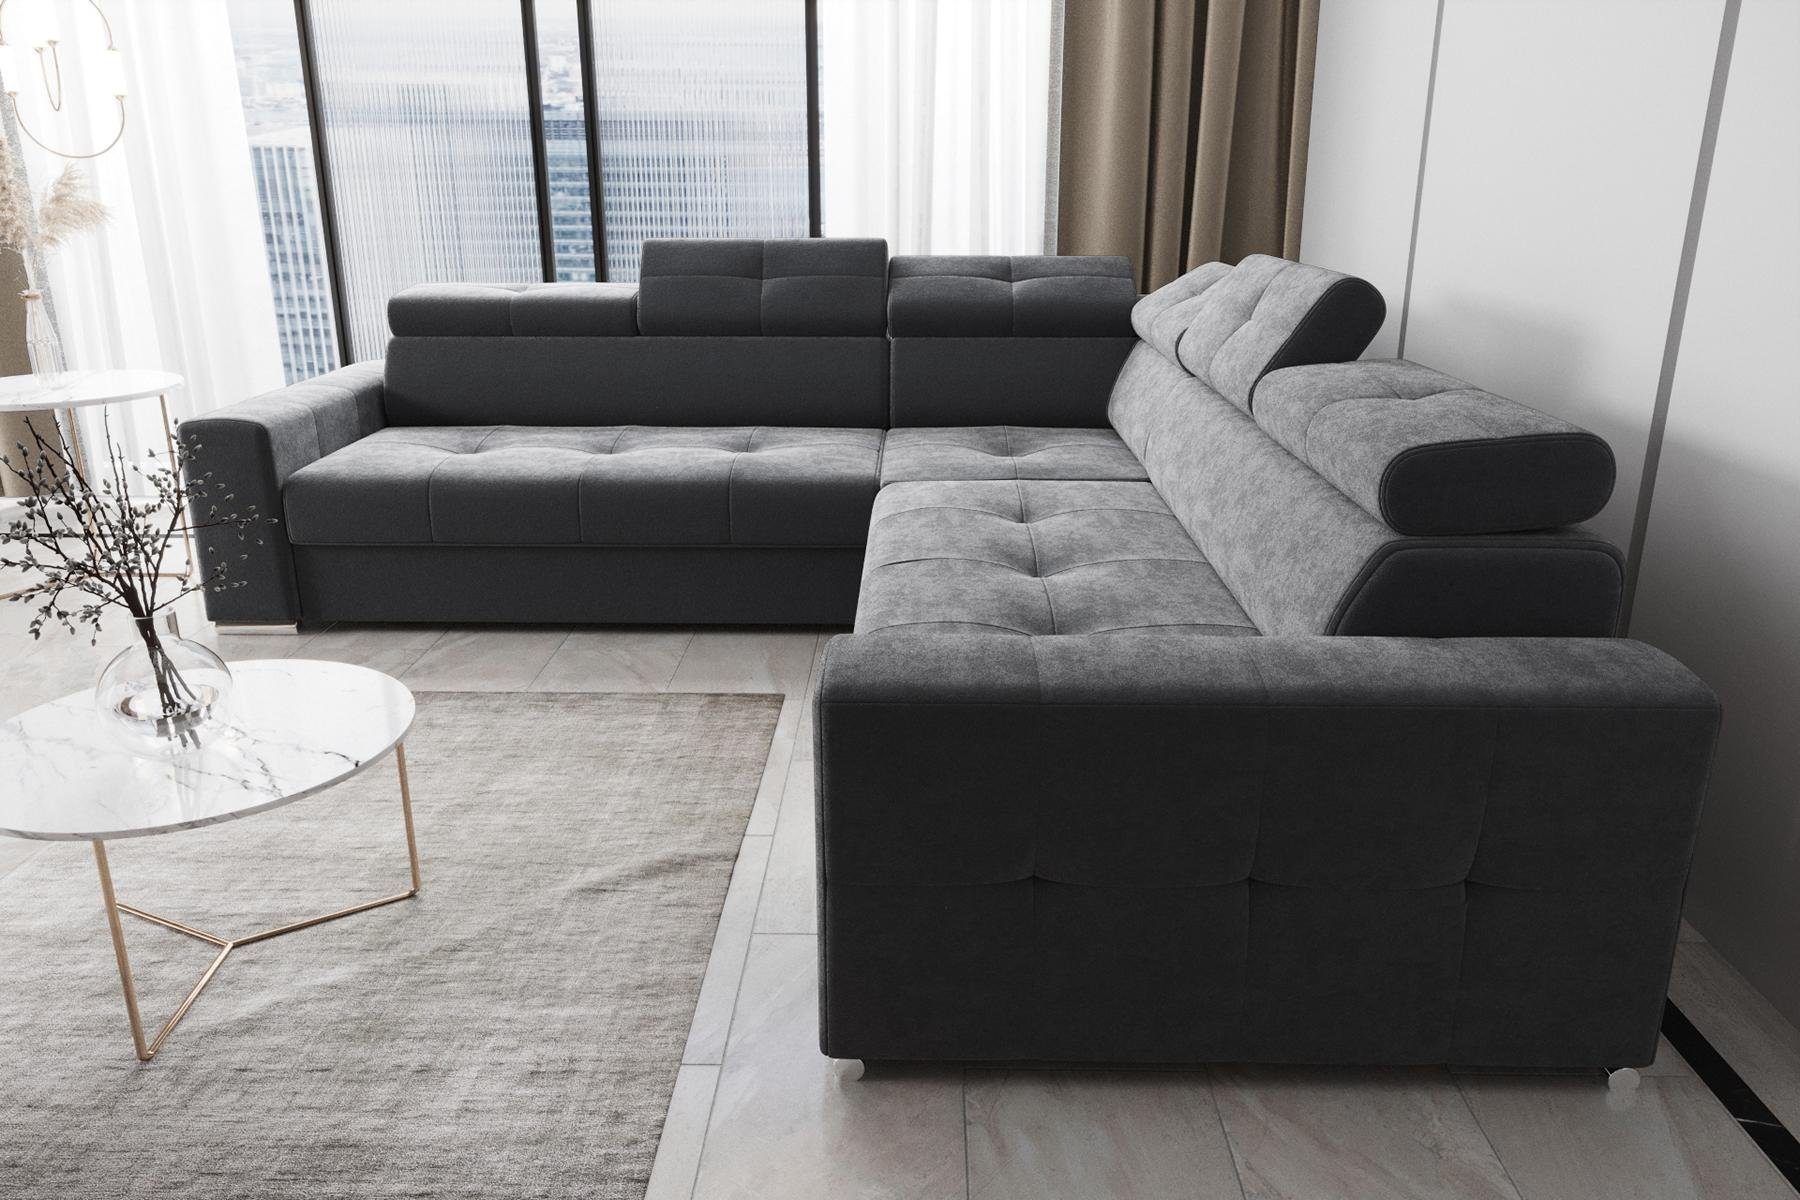 JVmoebel Ecksofa Wohnzimmer Textil Leder Luxus L Form Modern Ecksofa Couch, Made in Europe Grau